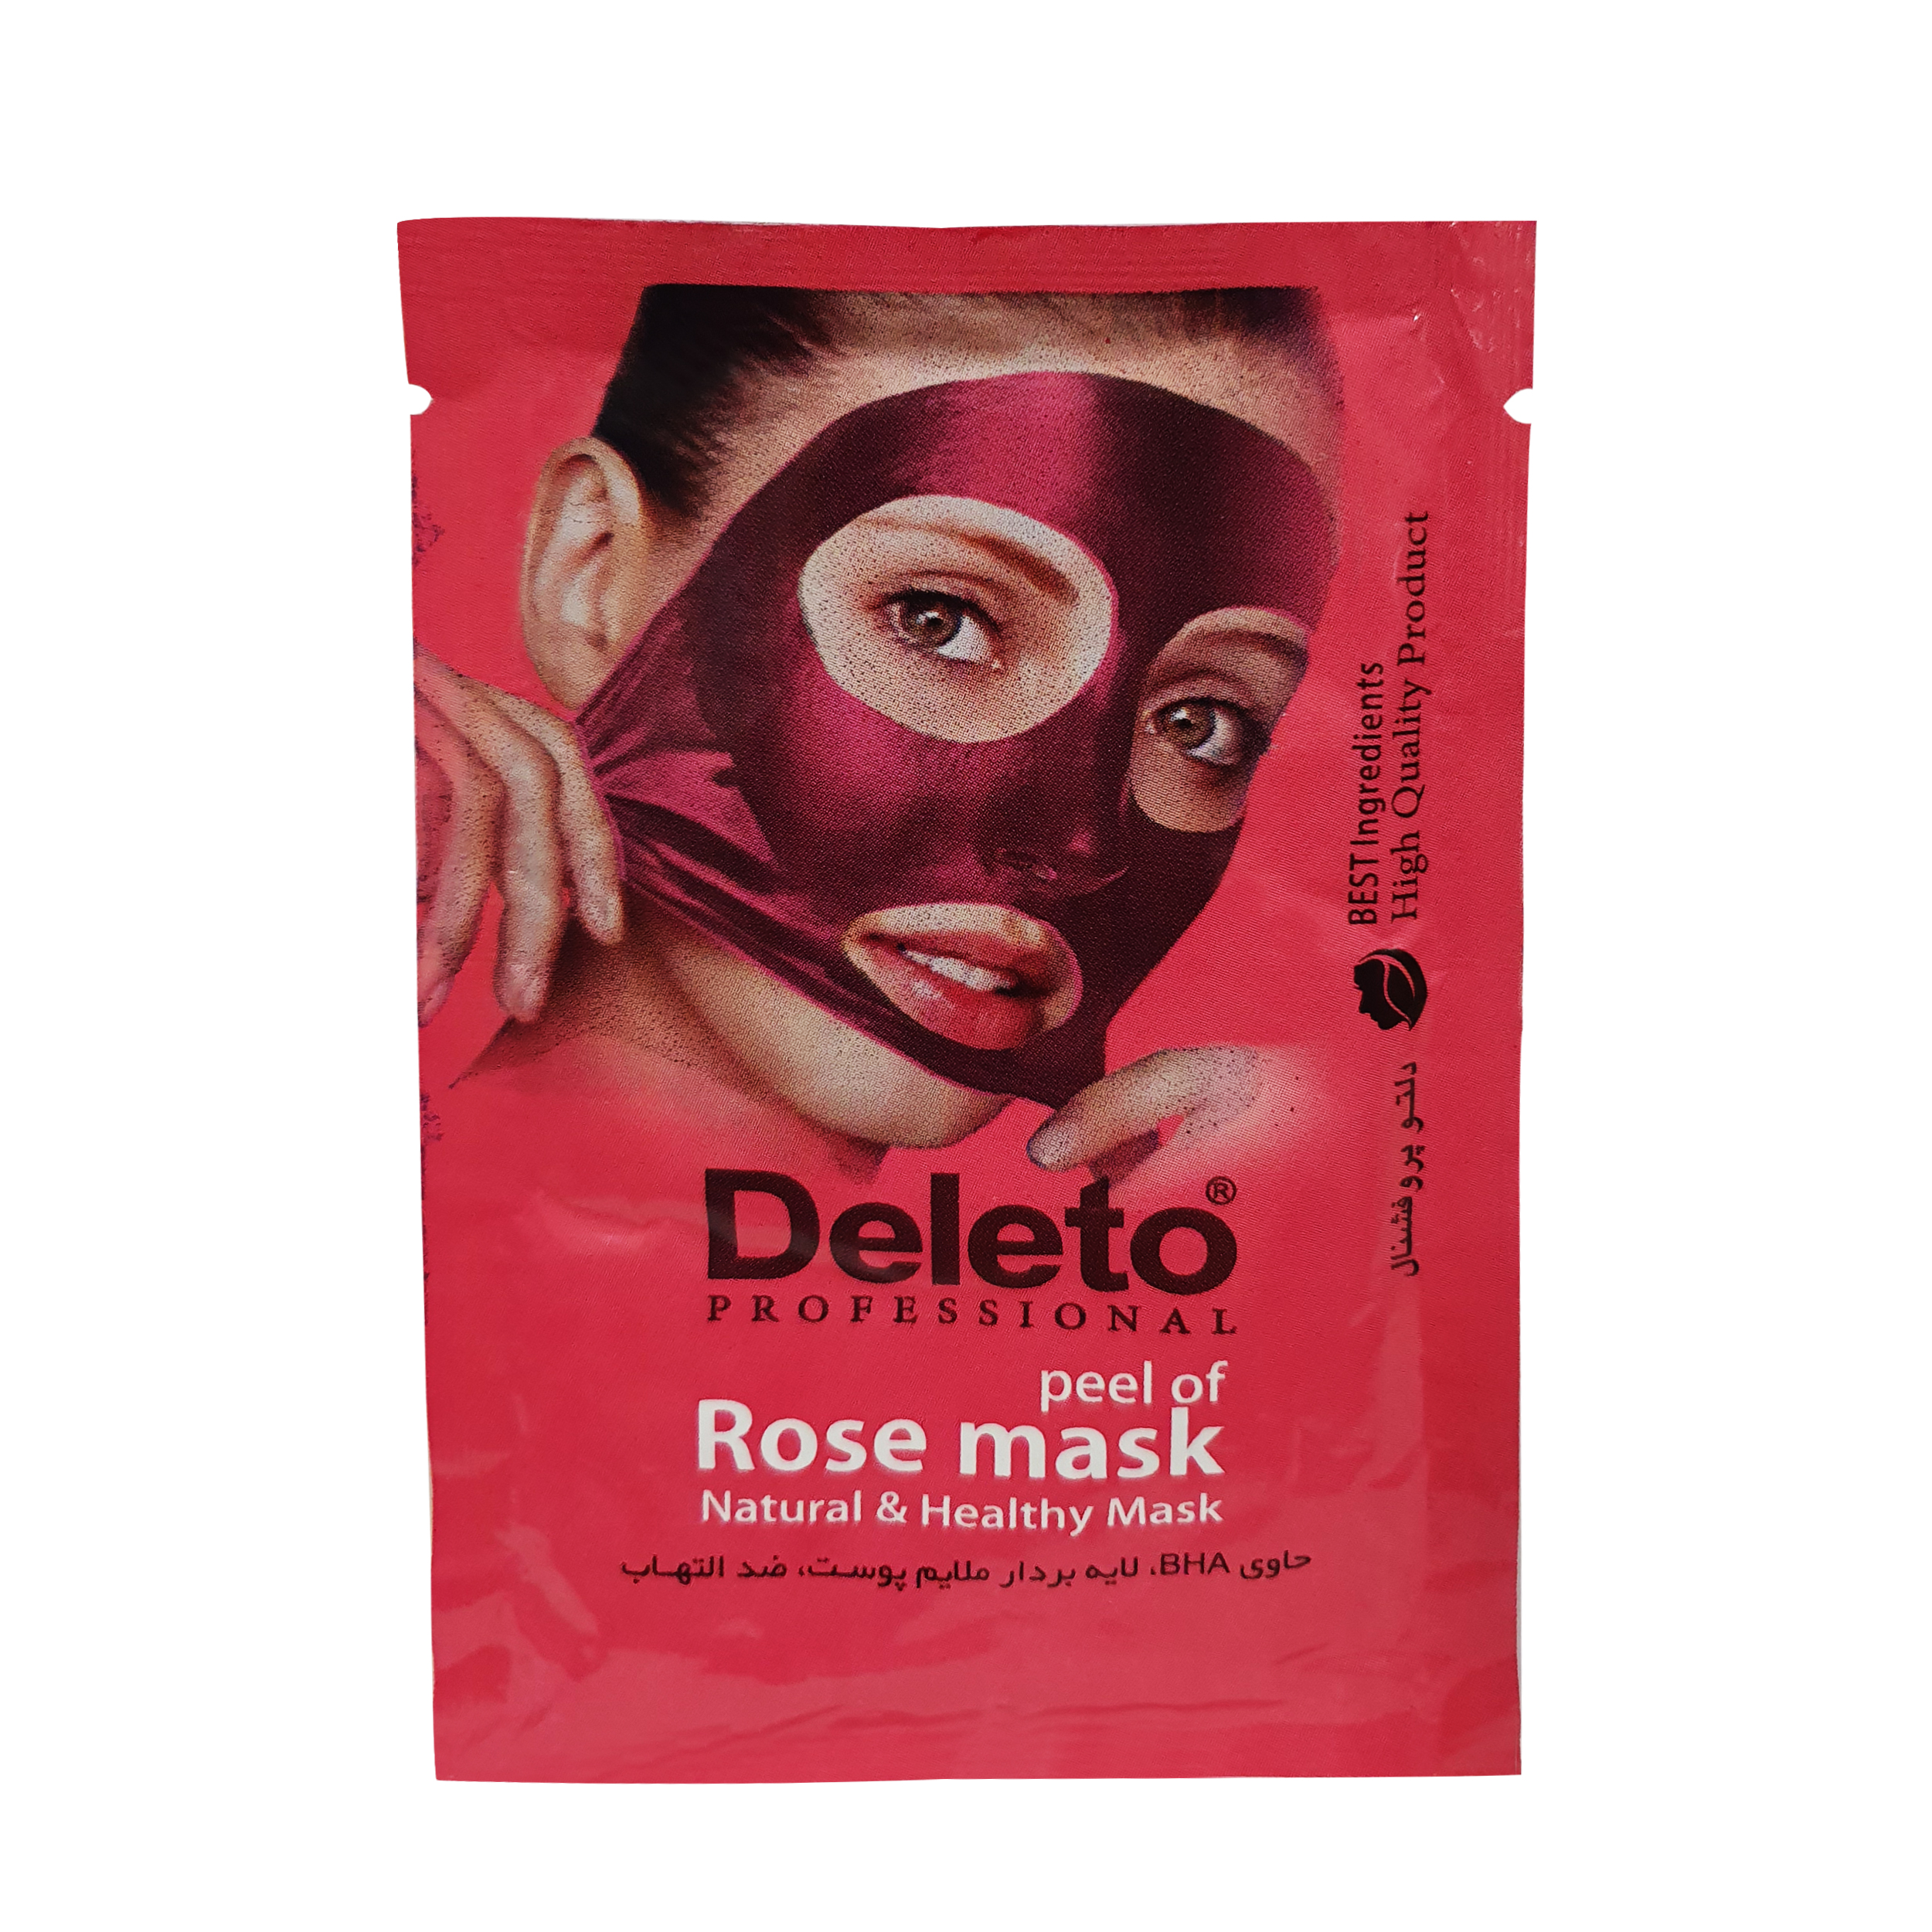 ماسک صورت دیلیتو مدل rose mask حجم 15 میلی لیتر